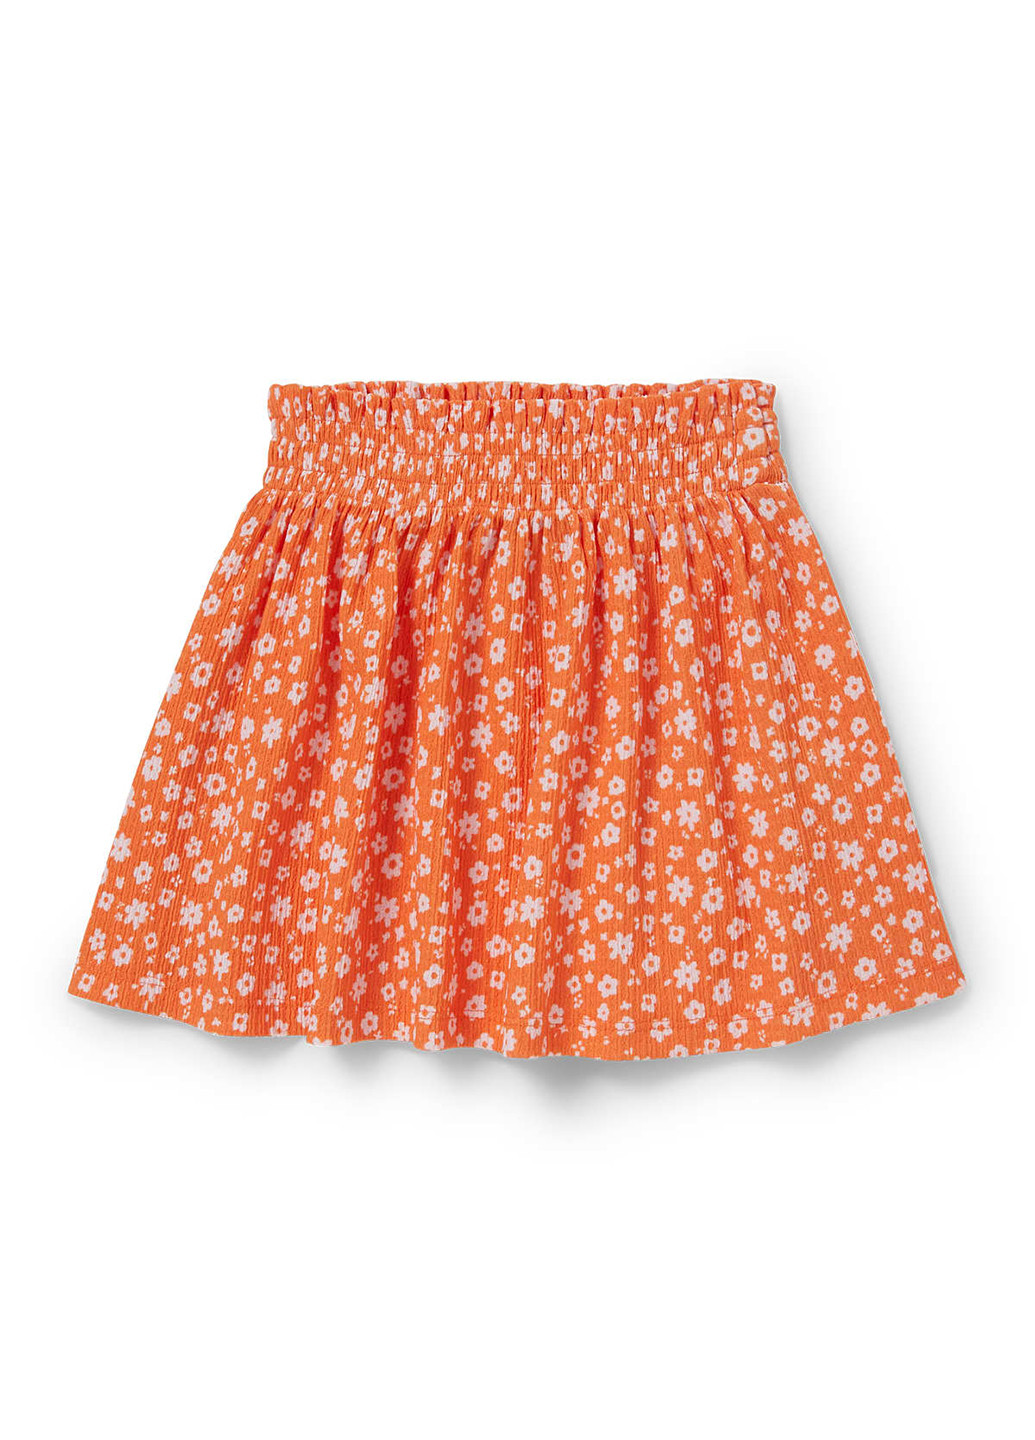 Оранжевая кэжуал цветочной расцветки юбка C&A клешированная